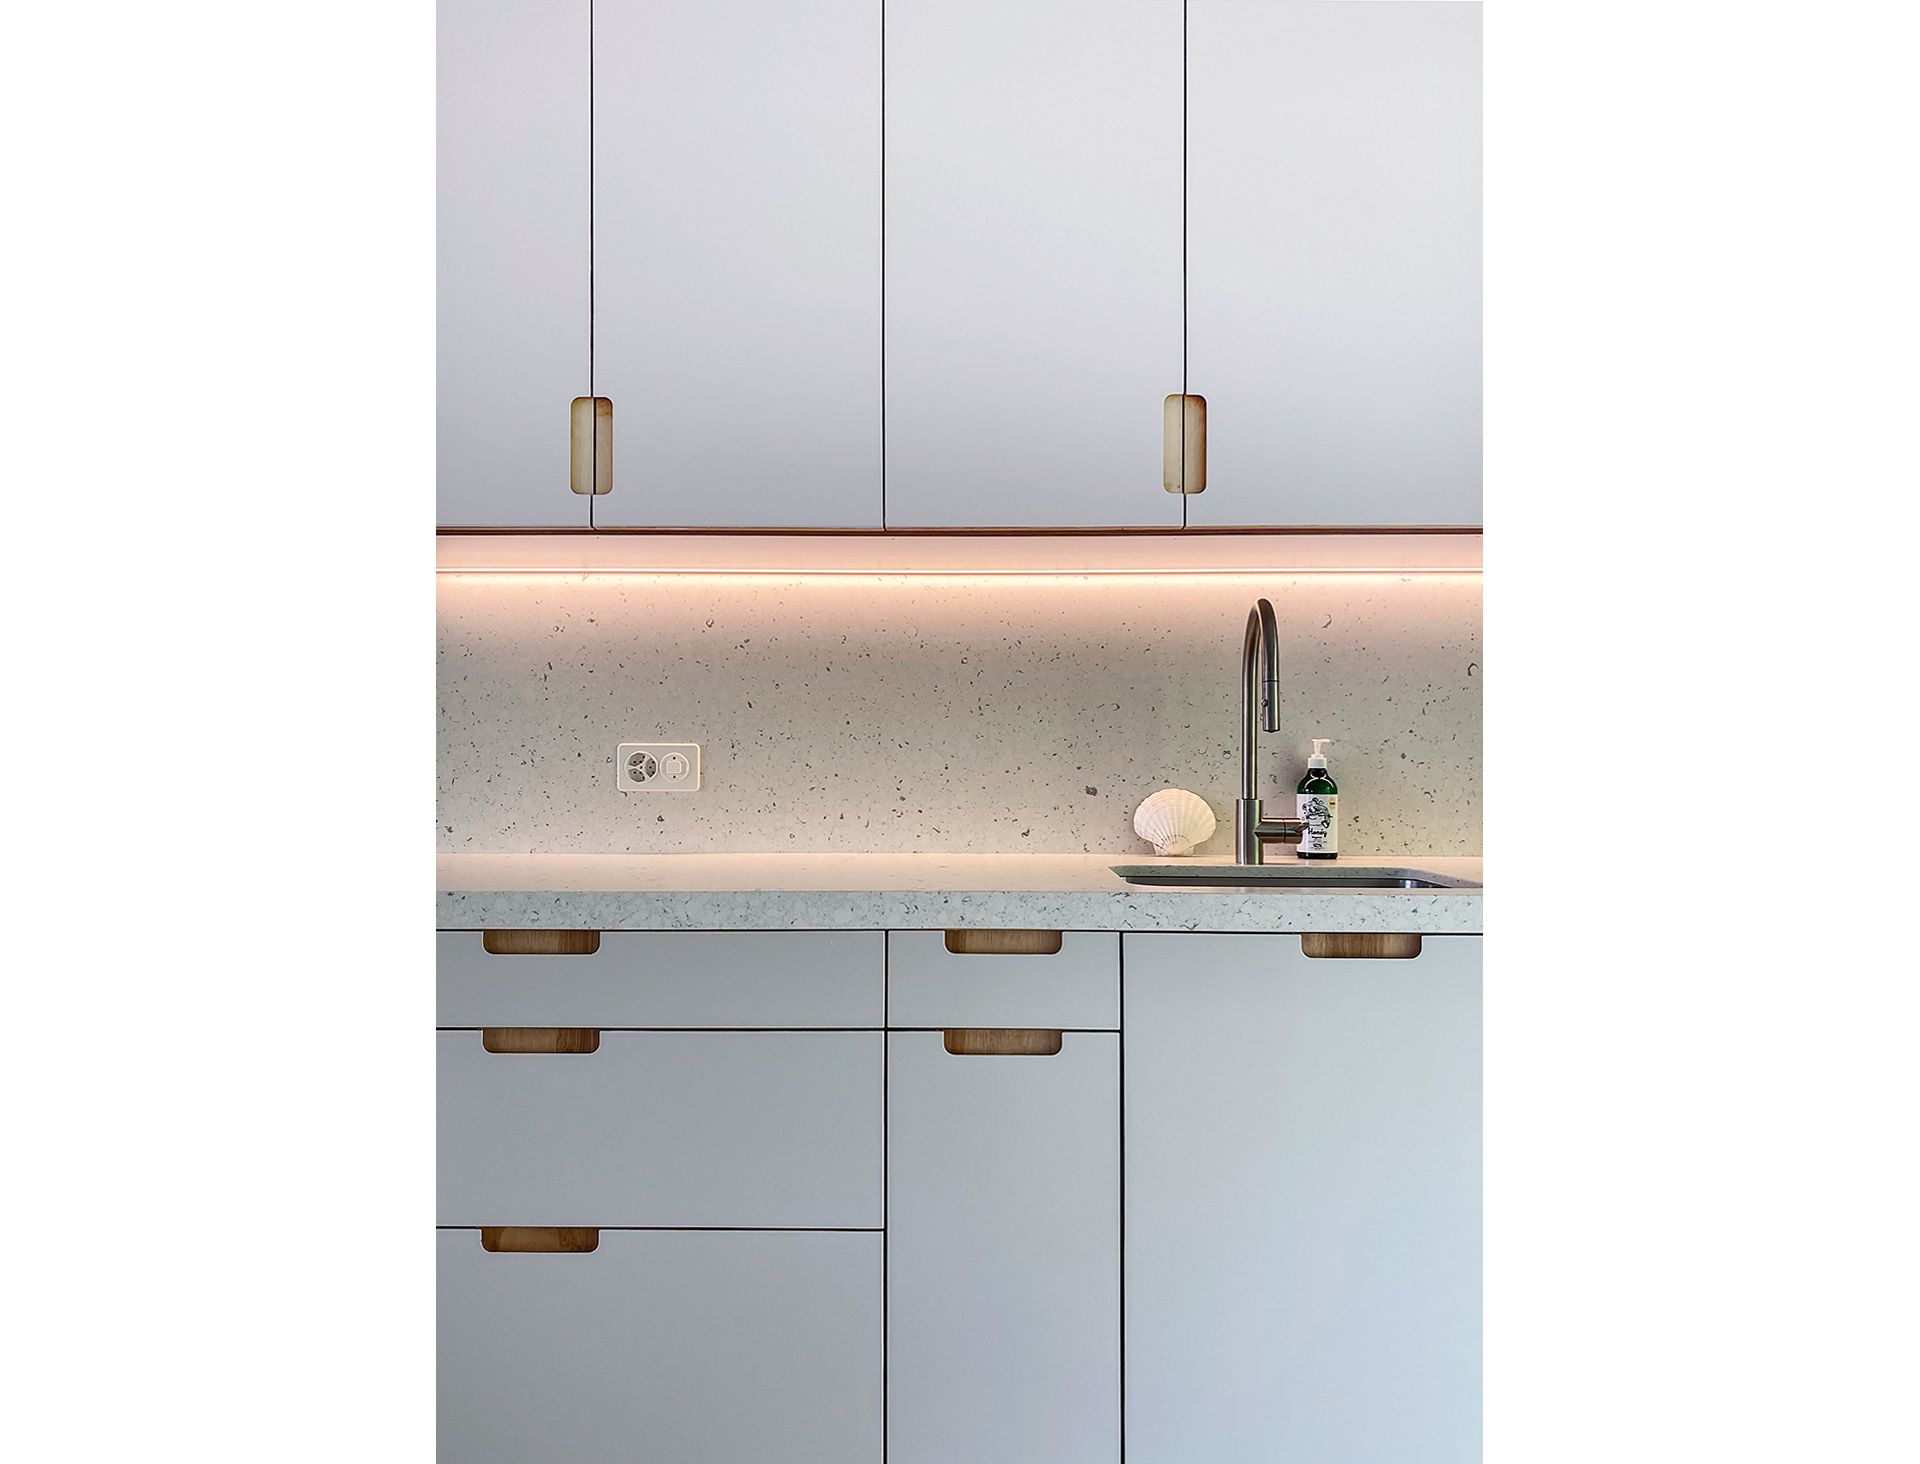 Die Griffe in der Küche lassen die Beschaffenheit der Multiplex-Platten erkennen. Die Architektin feilt gerne gemeinsam mit Handwerkern an eleganten Detaillösungen.